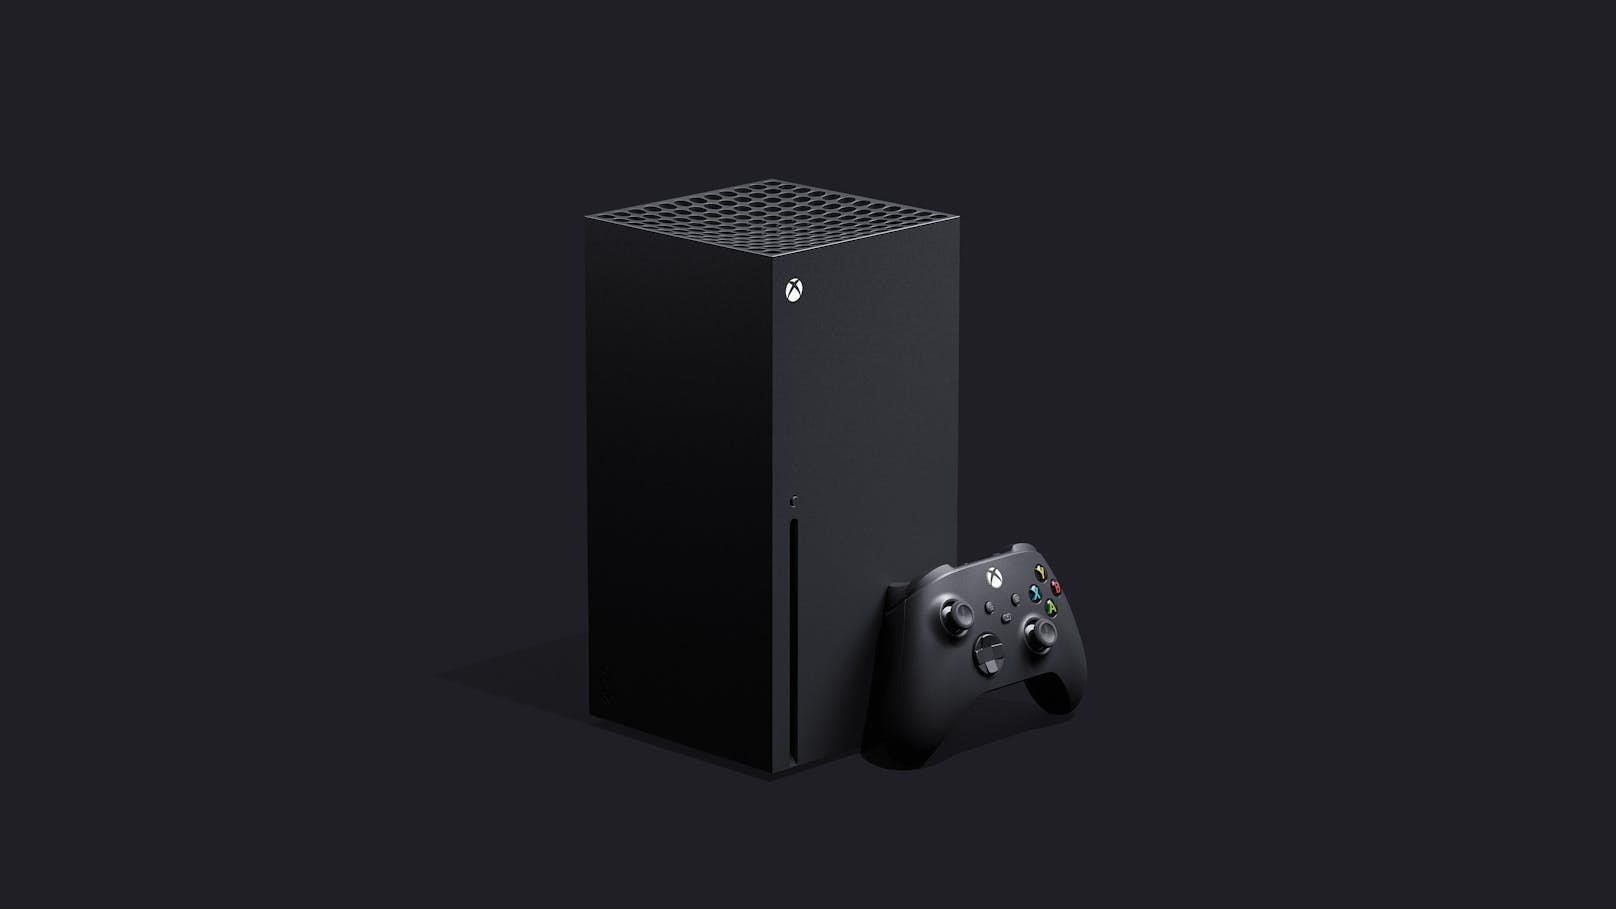 "Das industrielle Design ermöglicht es uns, die vierfache Rechenleistung der Xbox One X auf leise und effiziente Weise zu liefern." Die klobige Konsole soll sowohl vertikal als auch horizontal aufgestellt werden können.